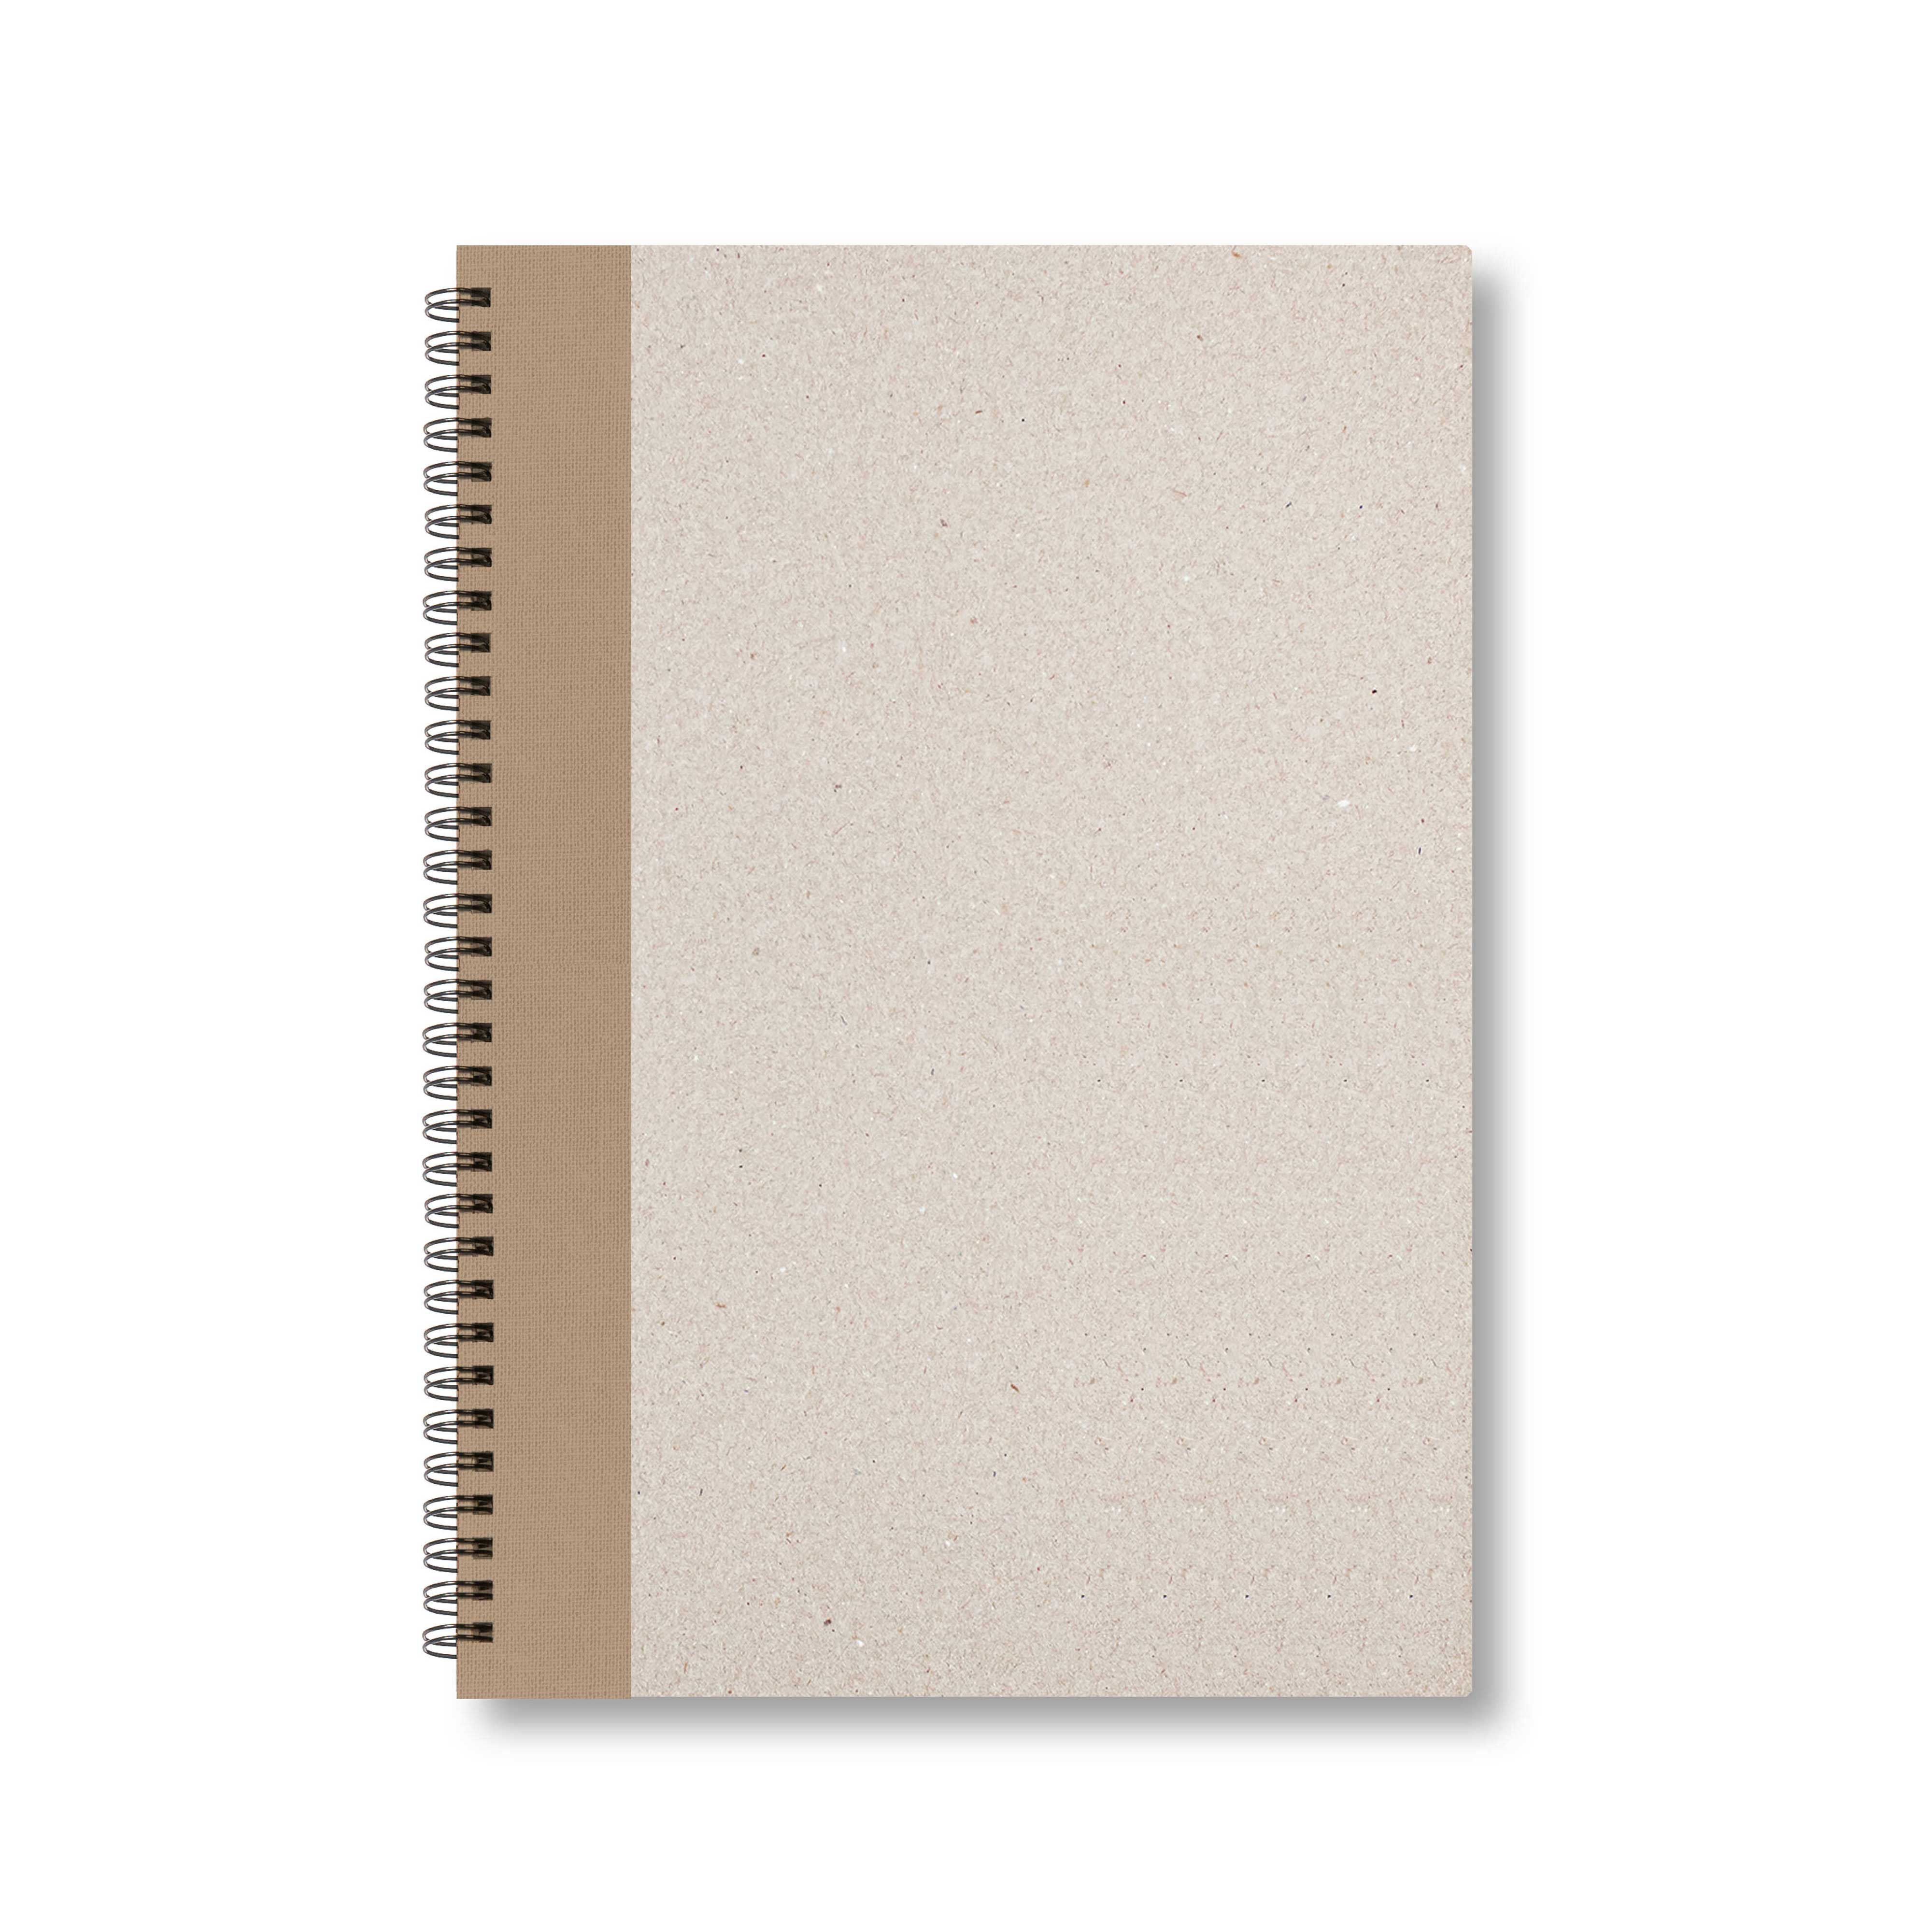 BOBO Zápisník, B5, čtverečkovaný, hnědý, konfiguruj si obálku